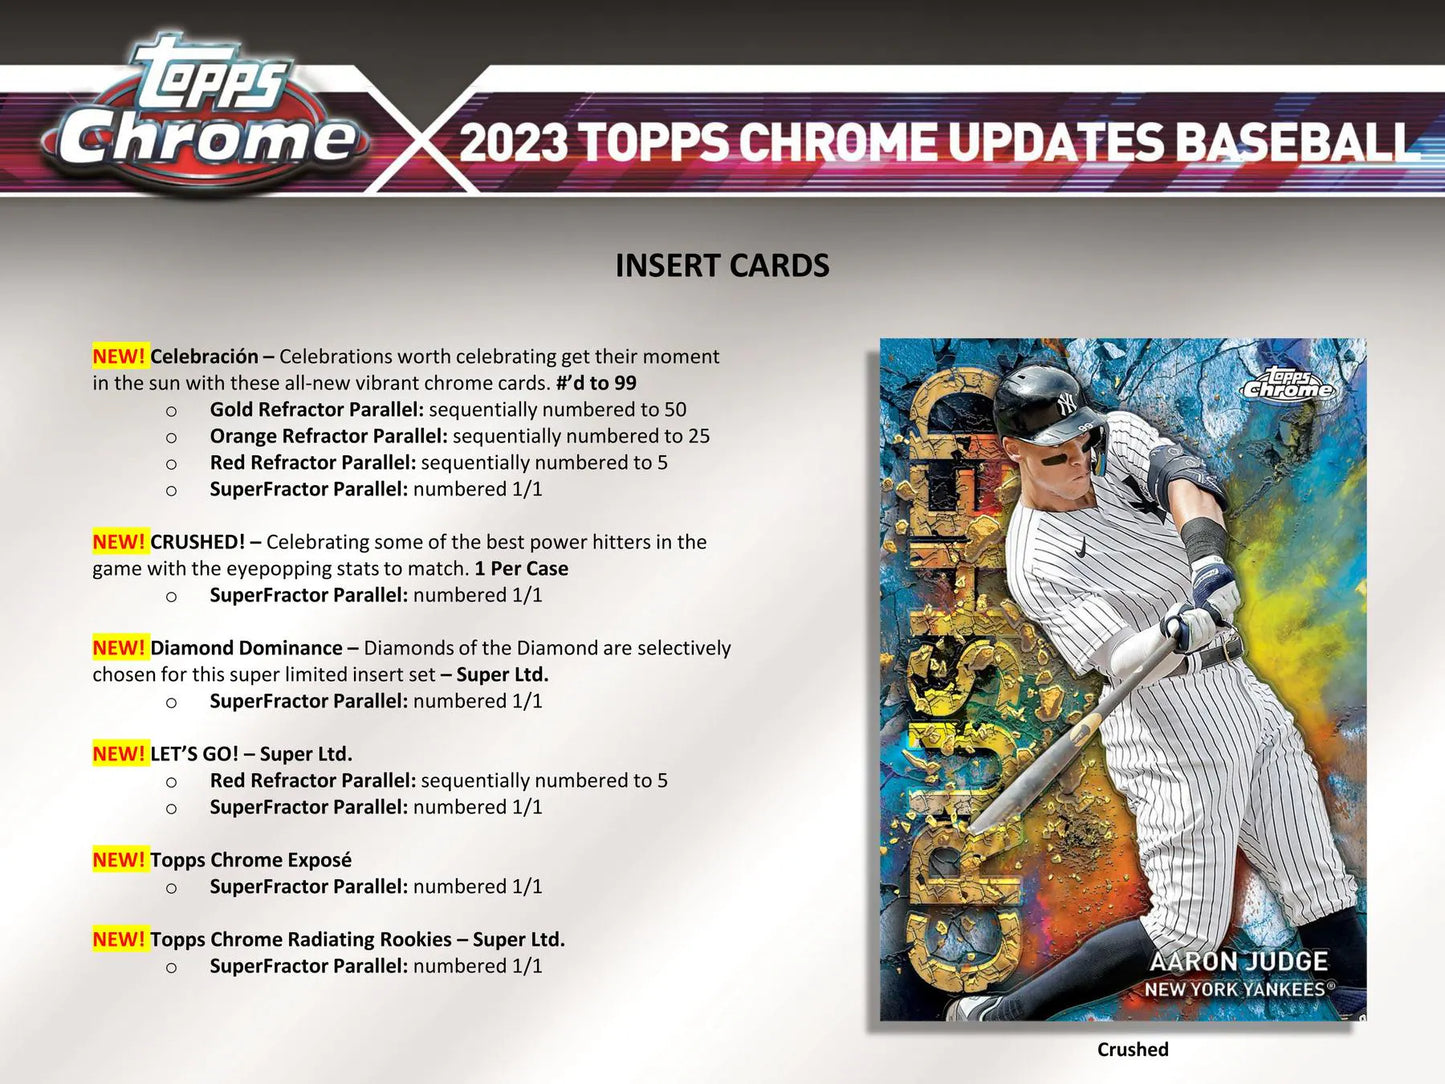 2023 Topps Chrome Update Series Baseball Hobby Box (Case Fresh)